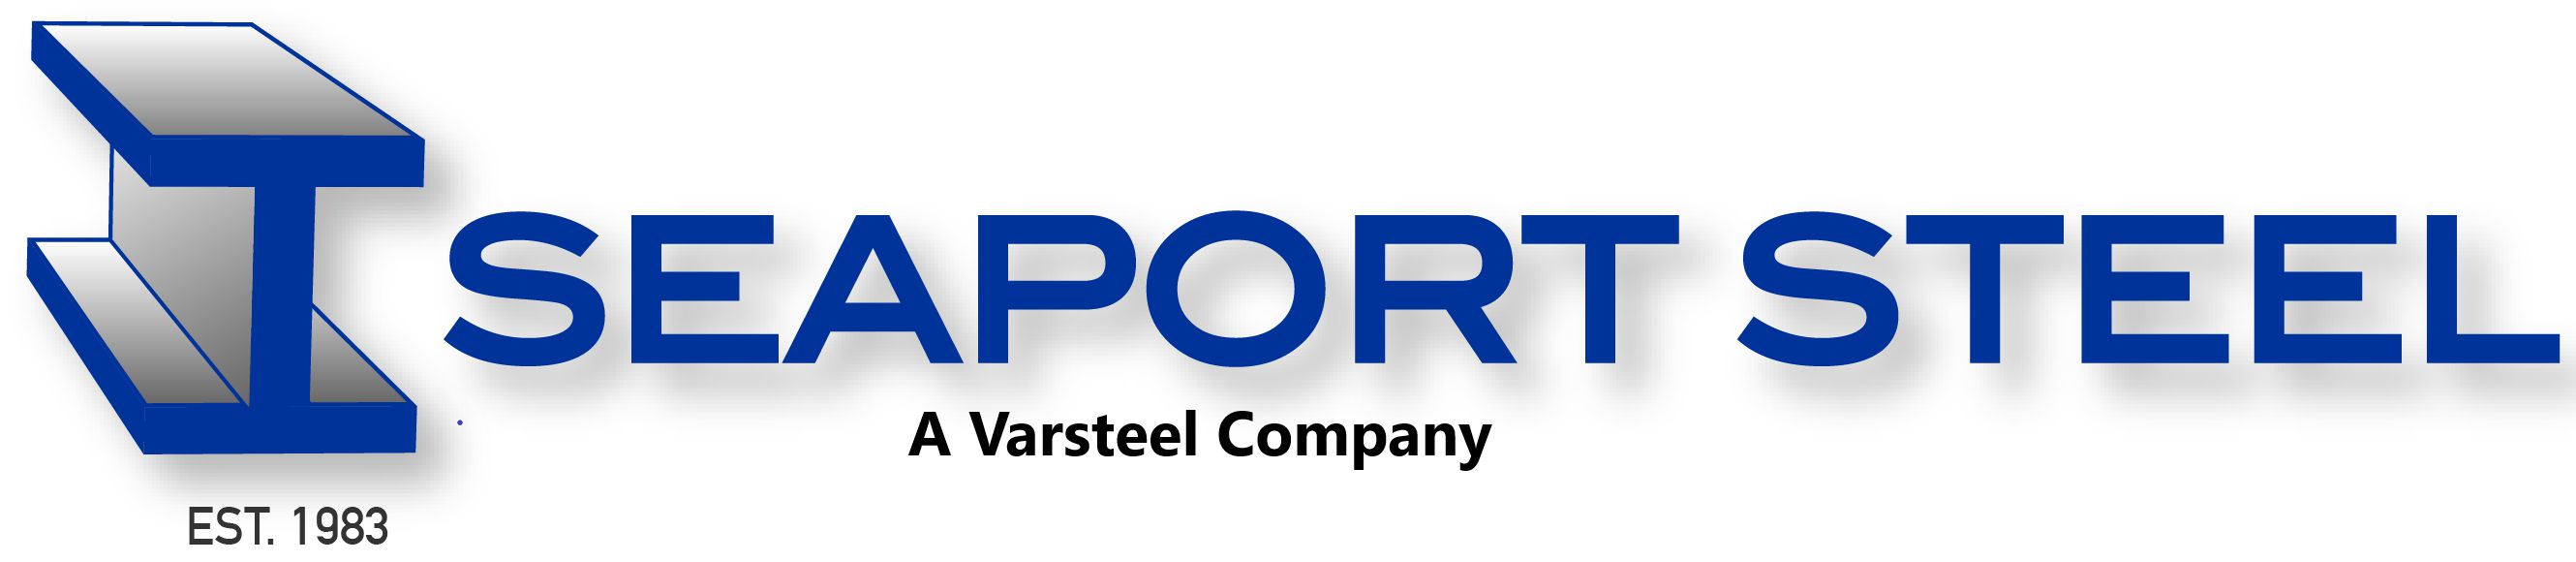 Seaport Steel